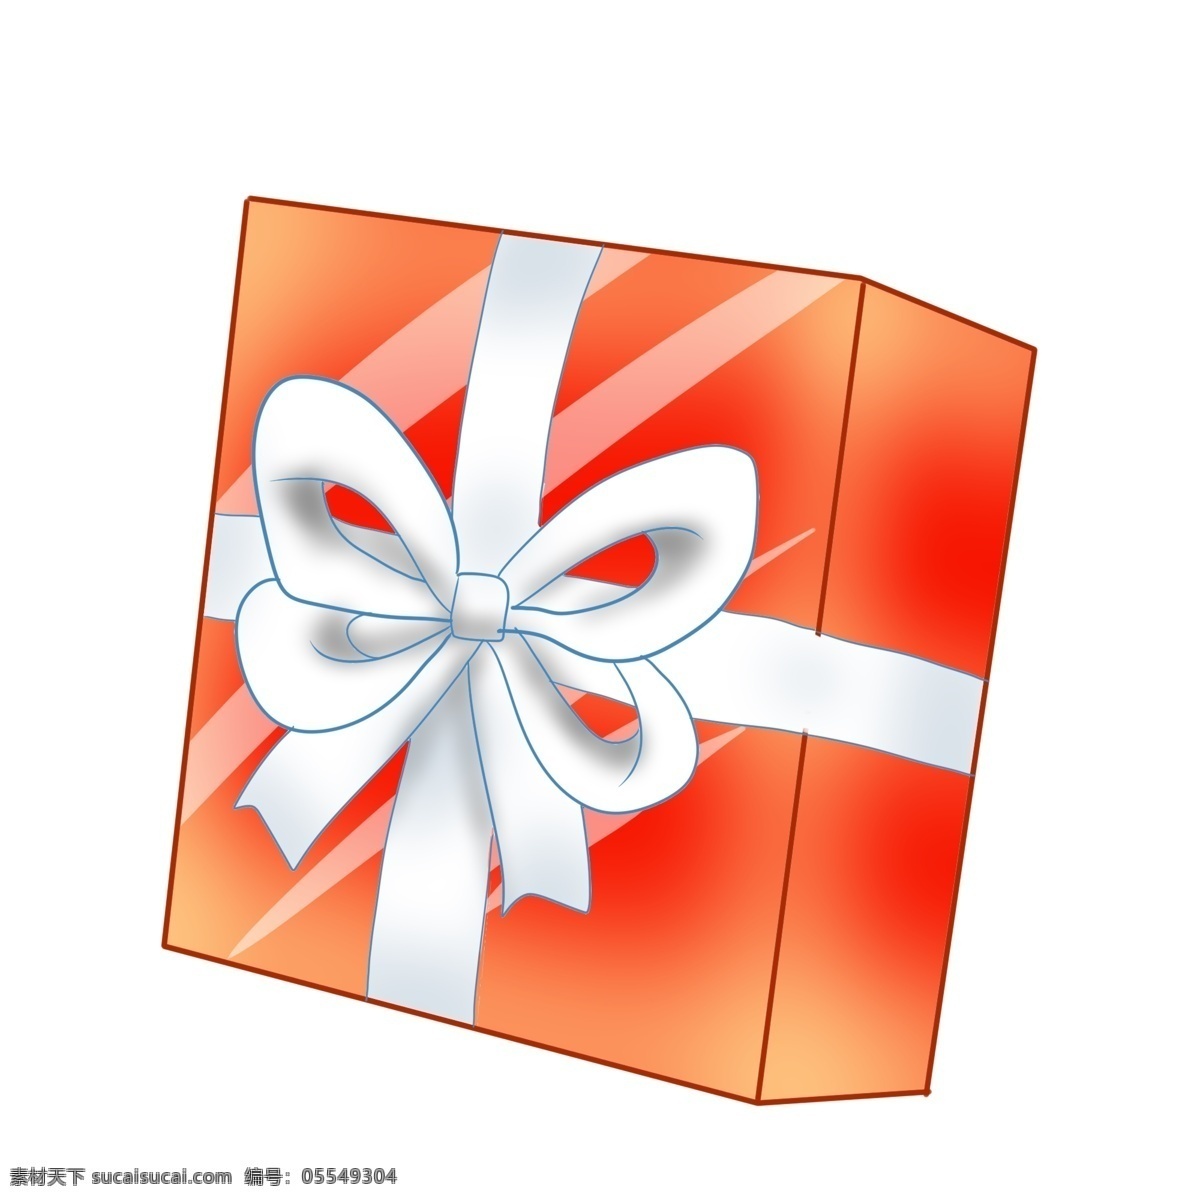 红色 精美 方形 礼盒 礼品礼盒 系了彩带 精美的结 暖色 送人礼物 包装 装饰 方形扁礼盒